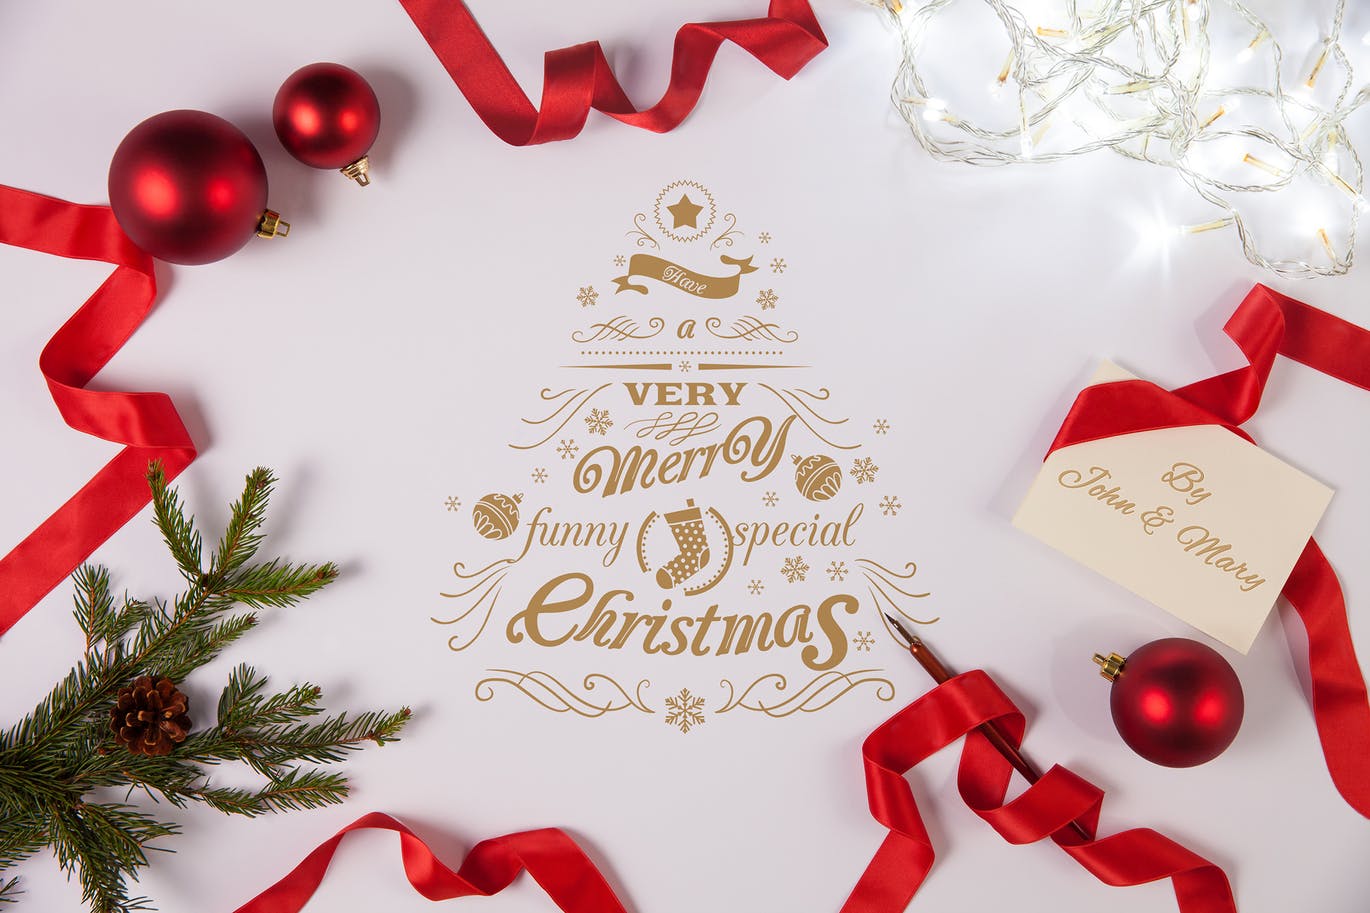 简约优雅风格圣诞节贺卡设计图样机蚂蚁素材精选模板v2 Clean and Elegant Christmas Greetings Mockups #2插图